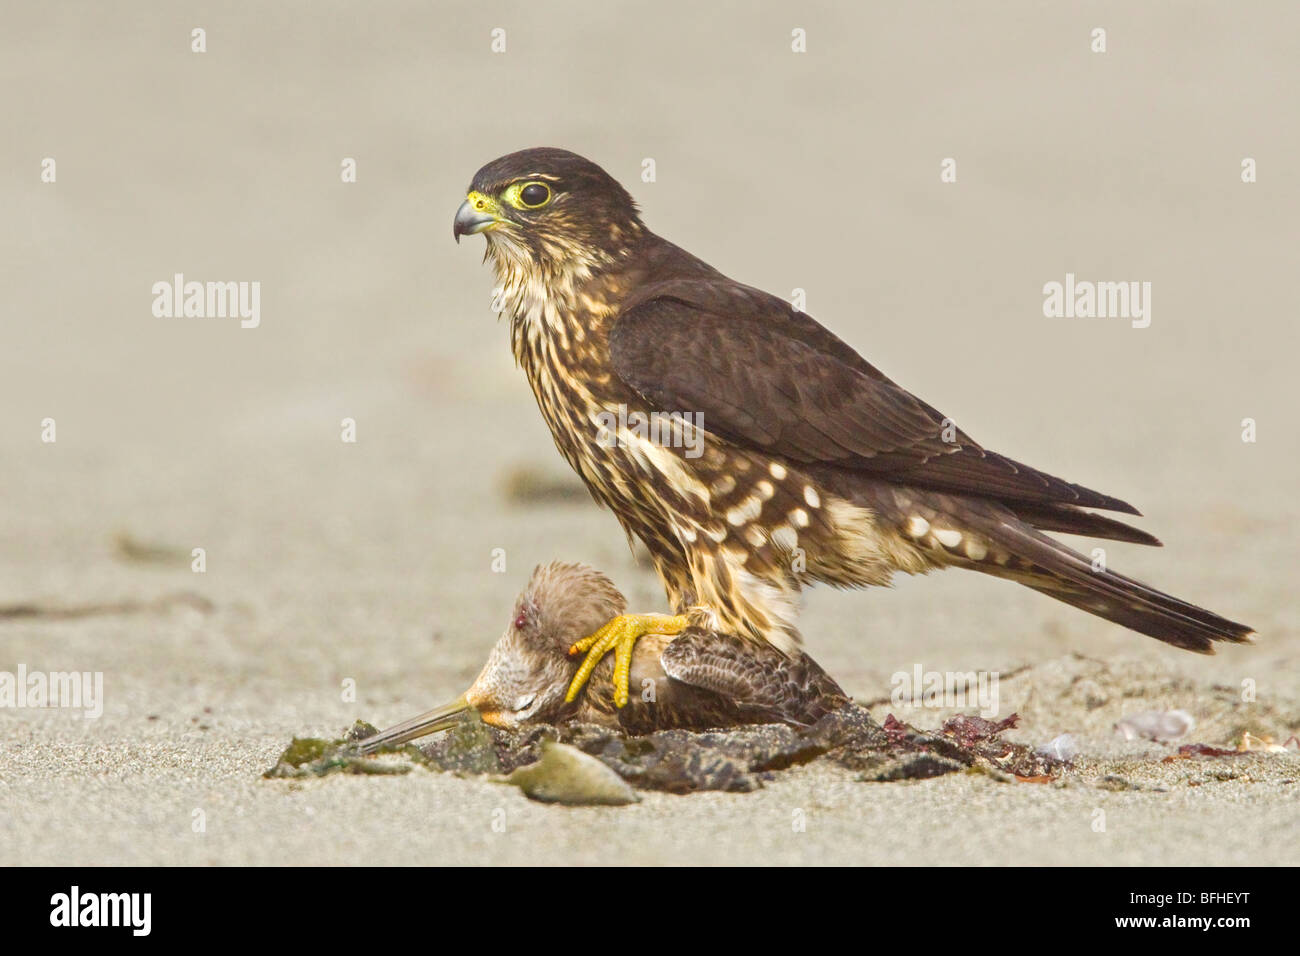 Merlin (Falco columbarius) perched on the beach feeding on a shorebird in Washington, USA. Stock Photo